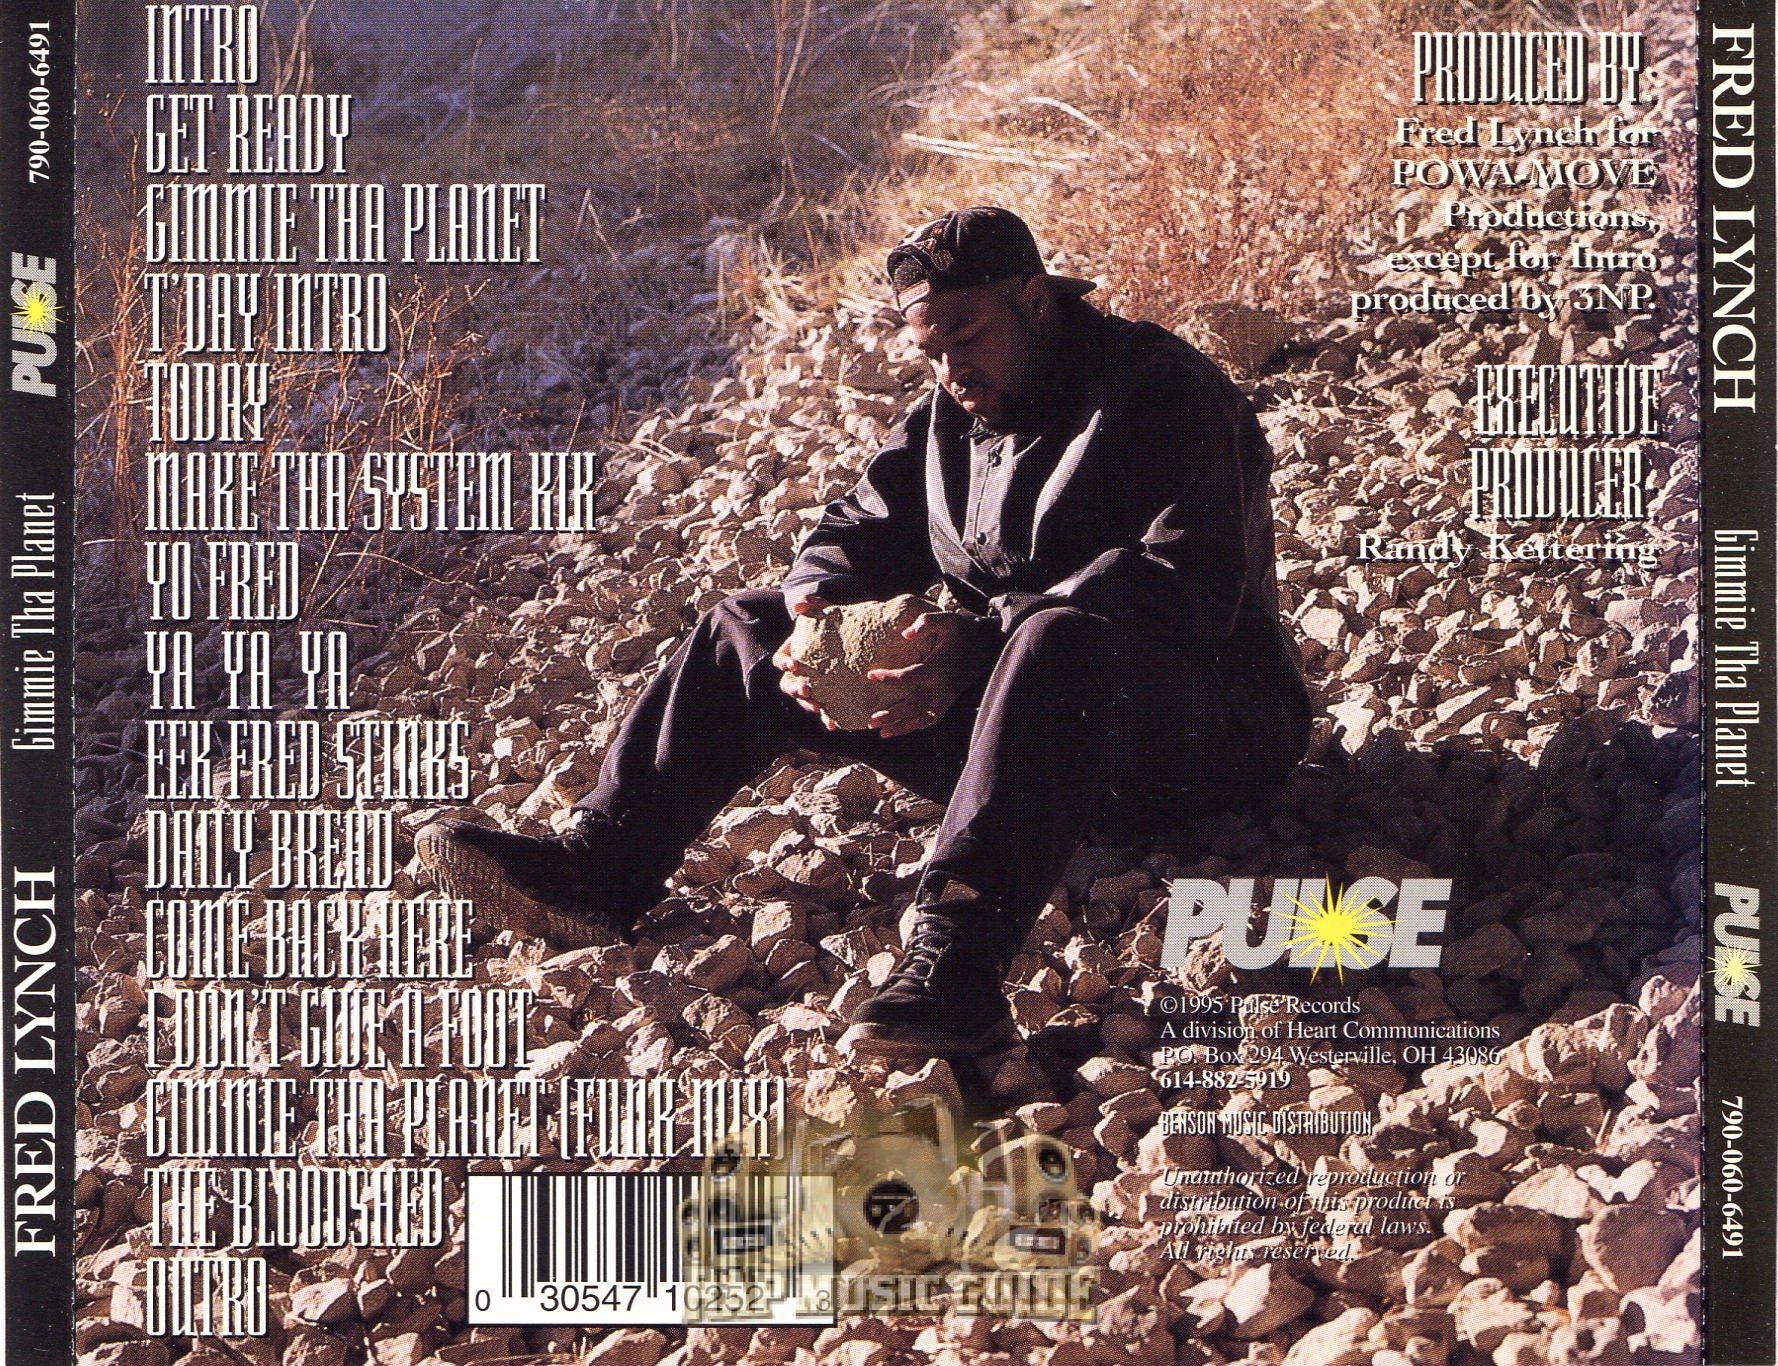 Fred Lynch - Gimmie Tha Planet: CD | Rap Music Guide